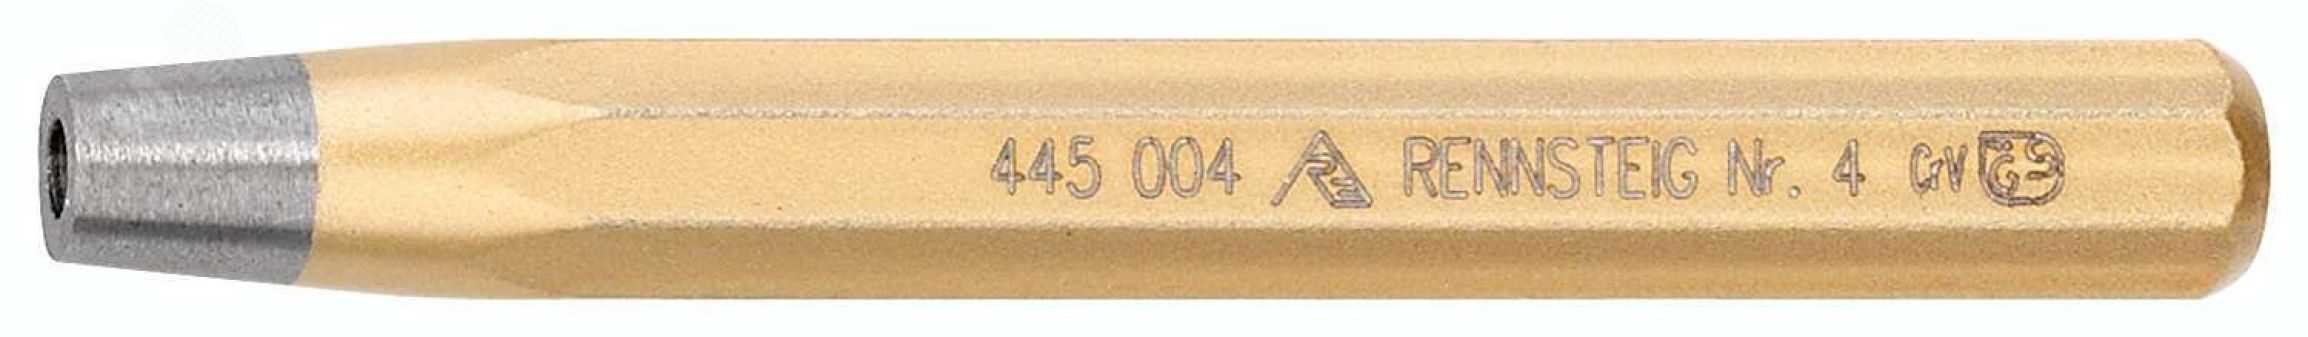 Натяжка для заклепок DIN 6434, заклепка 7 мм, отв. 8 мм, 14 x 120 мм, 8-гранный профиль, для сжатия ( осадки) листов перед клепкой RE-4450070 RENNSTEIG